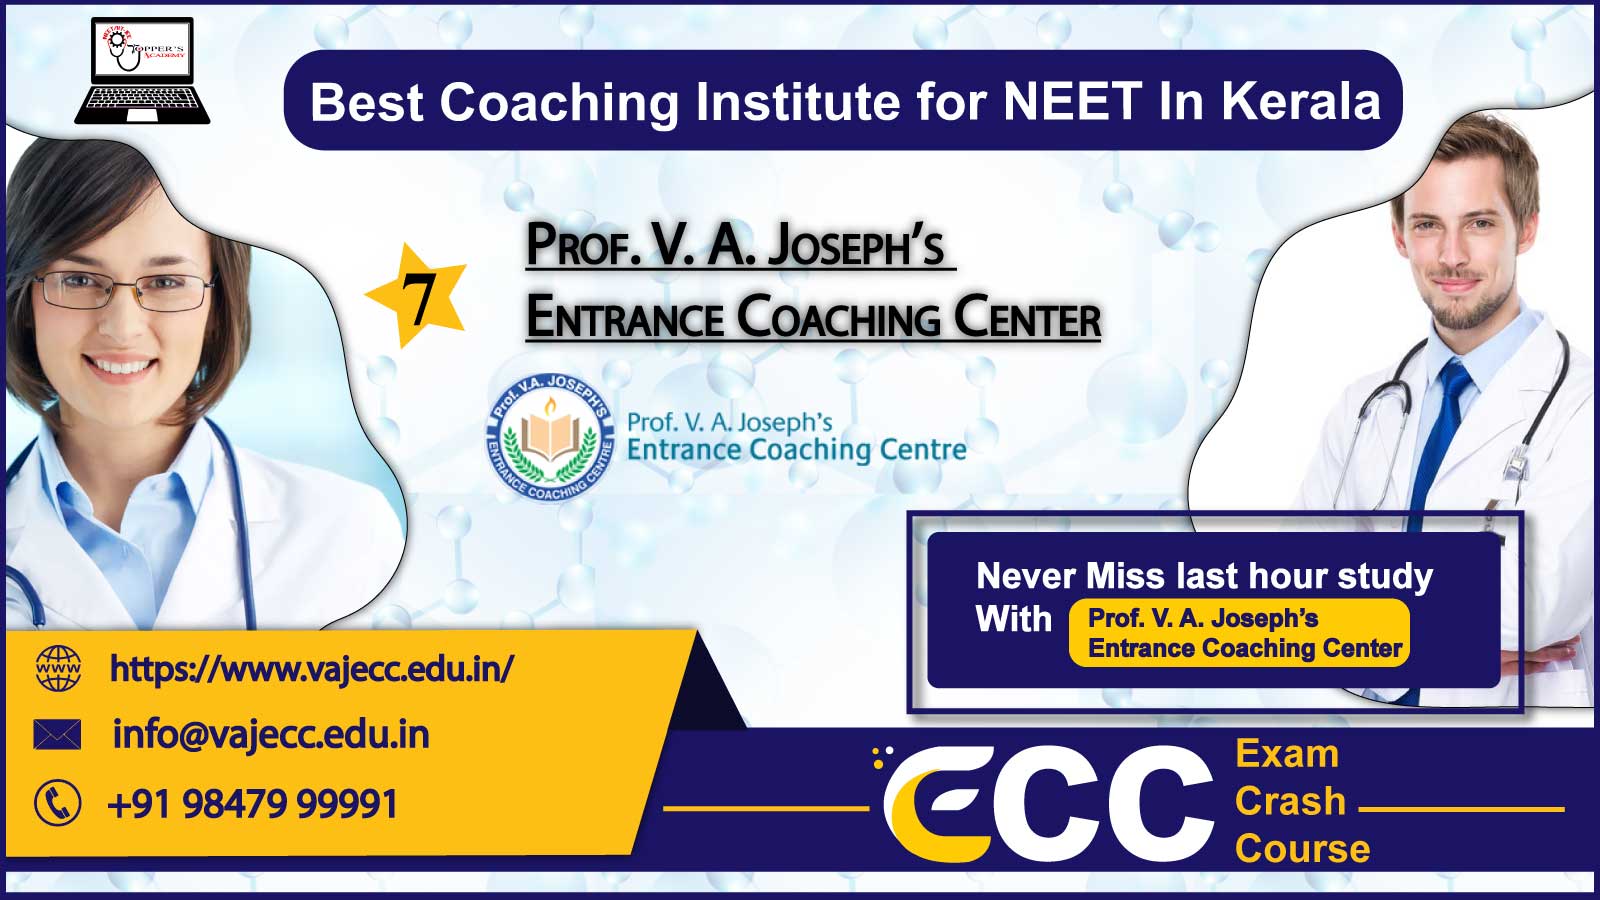 Prof. V. A. Joseph’s Neet Coaching in Kerala